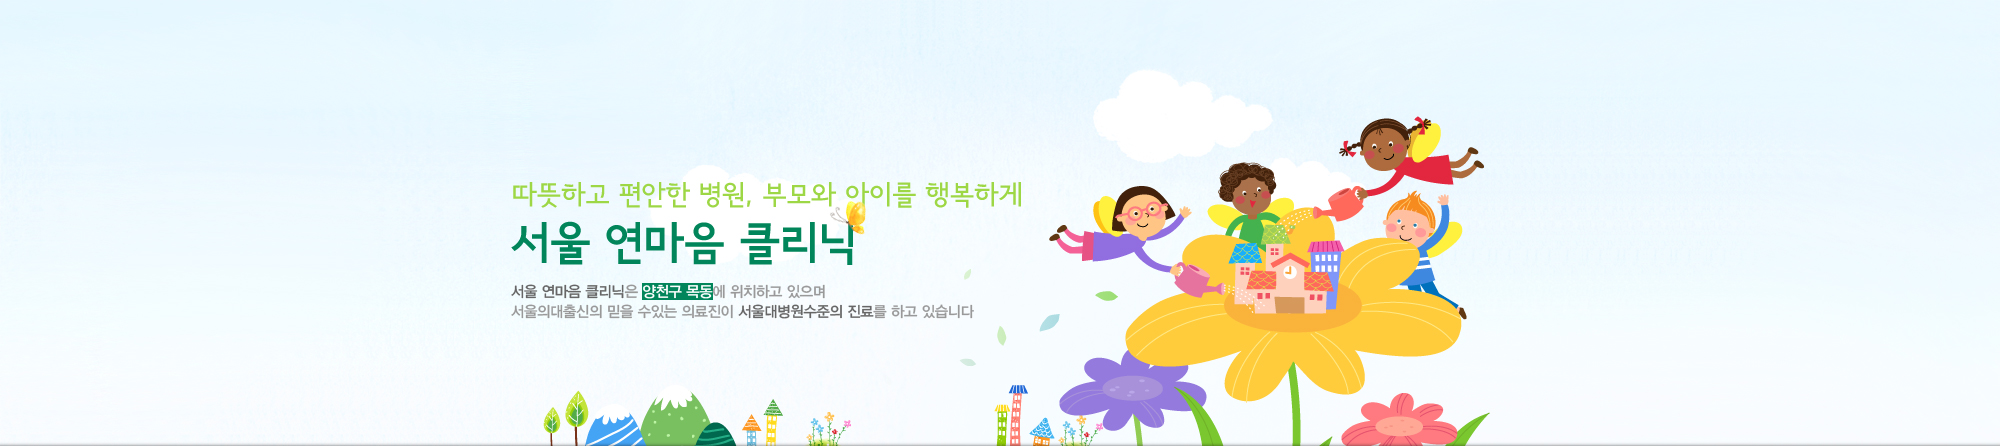 따뜻하고 편안한 병원, 부모와 아이를 행복하게 서울 연마음 클리닉